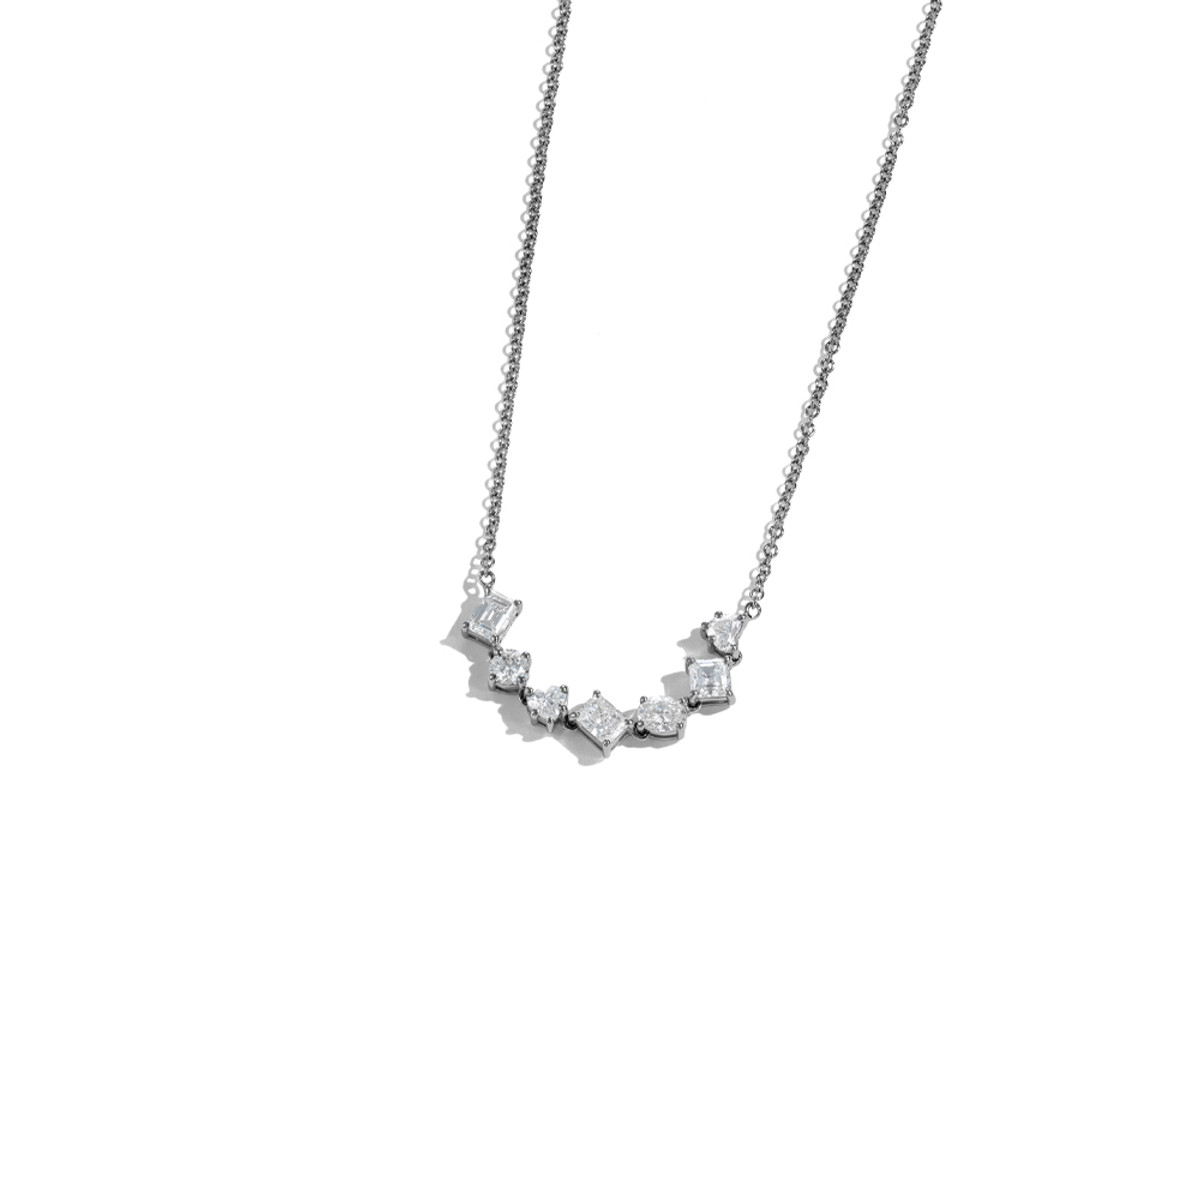 18k White Gold 1.06ct Mixed-Shape Diamond Bar Necklace-49163 Product Image